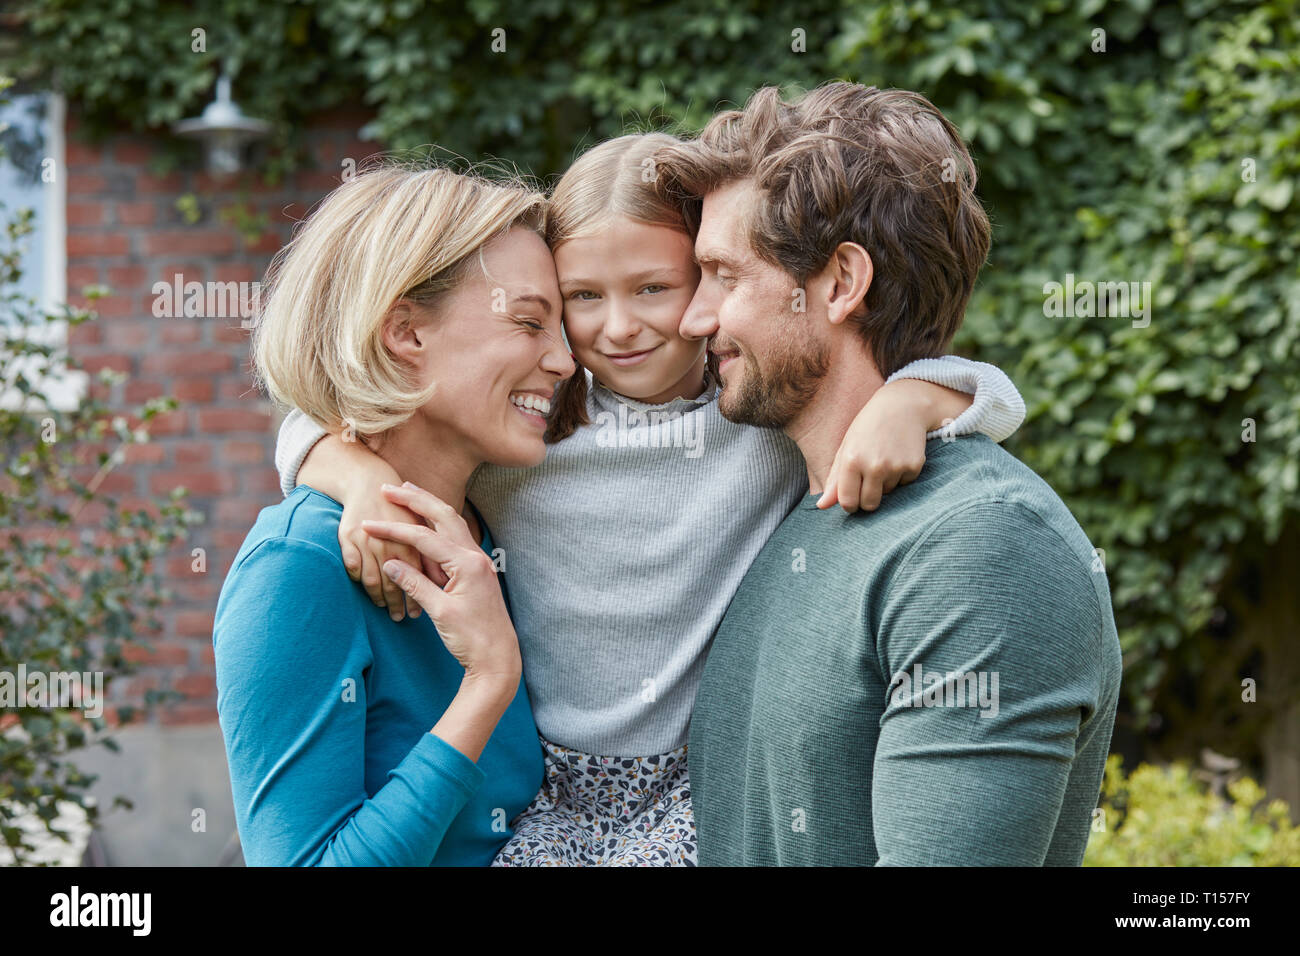 Portrait de famille heureuse dans le jardin de leur maison Banque D'Images